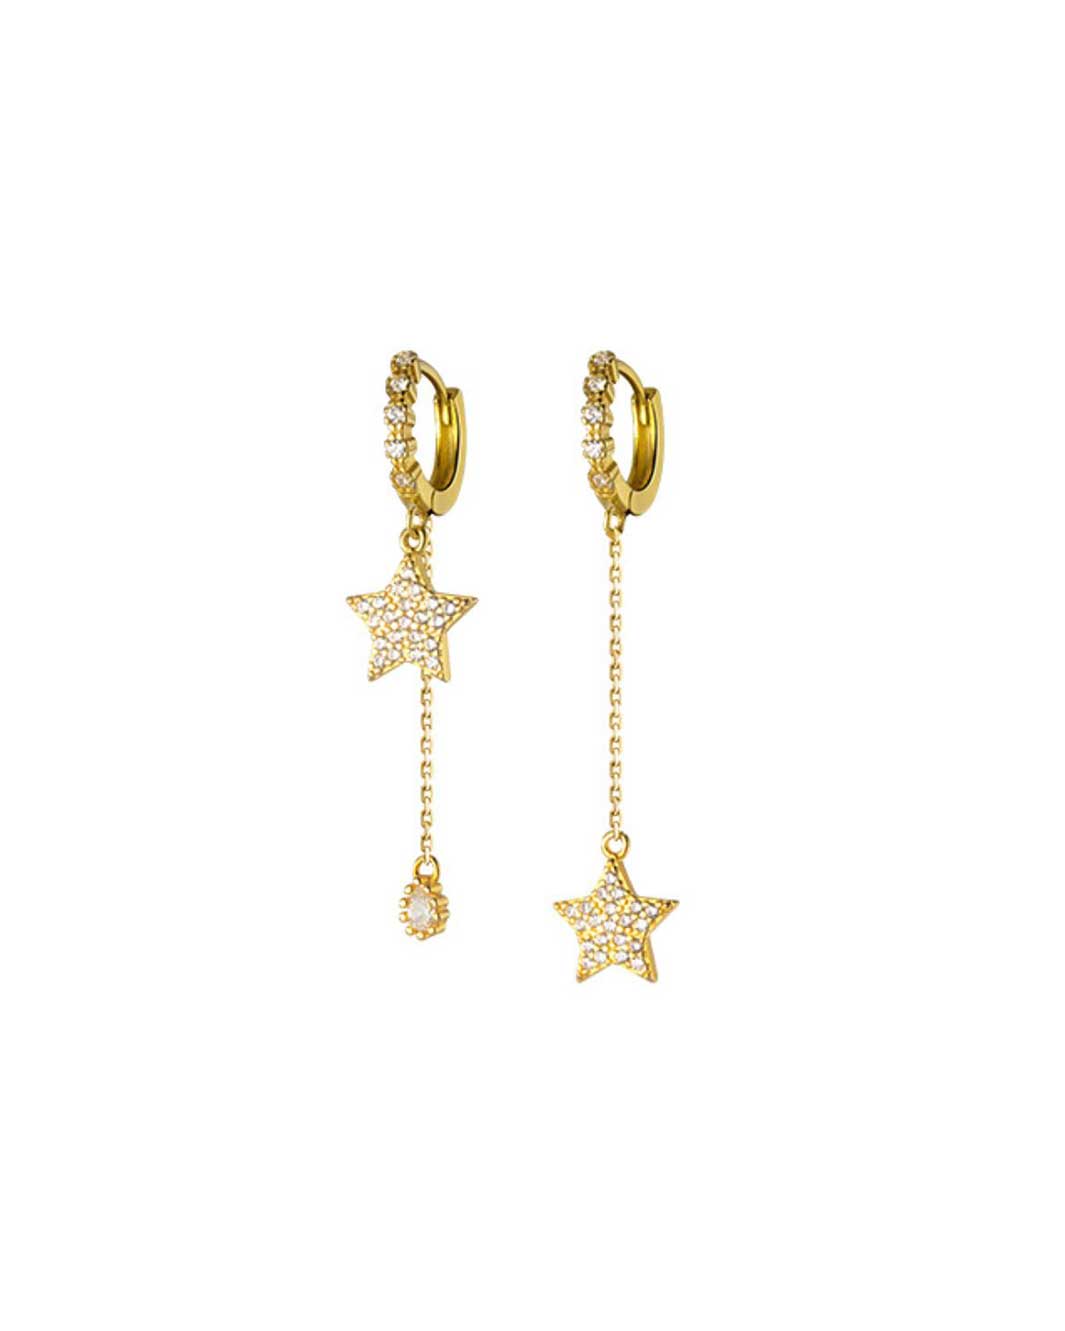 Astra Diamante Star Huggie Earrings